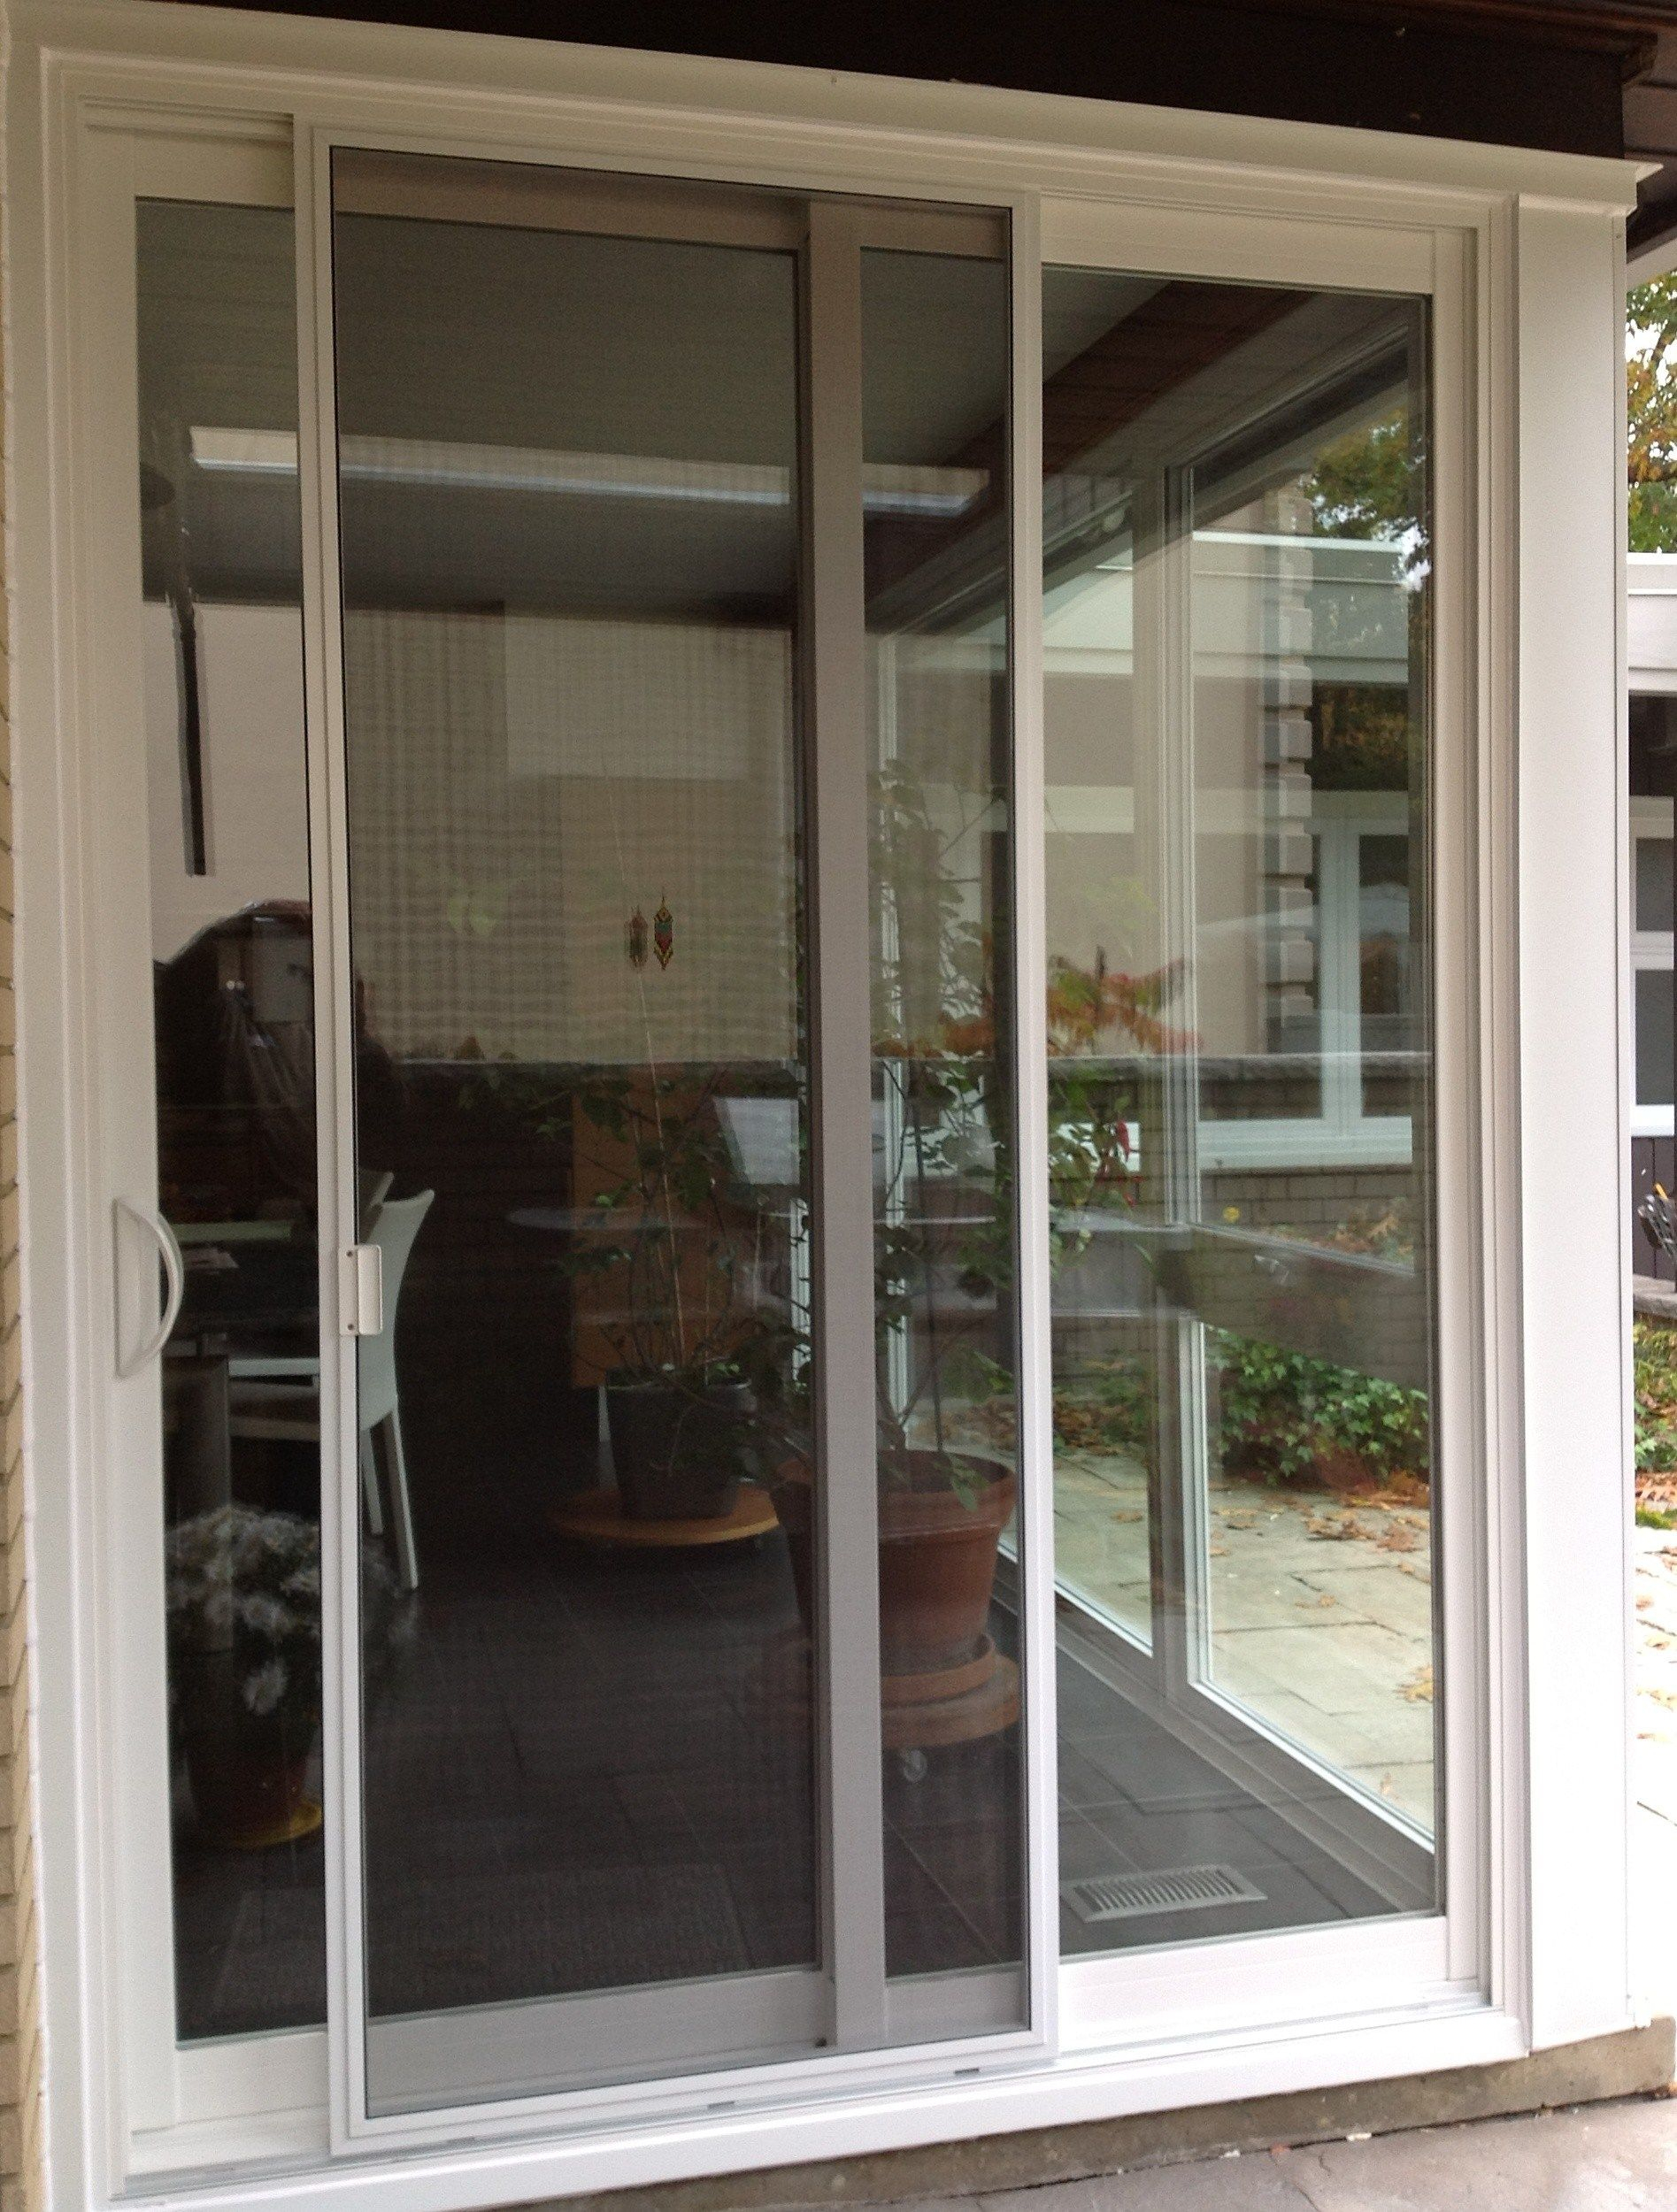 Best Of Door Handles For Sliding Glass Doors Home Decor regarding size 1895 X 2500